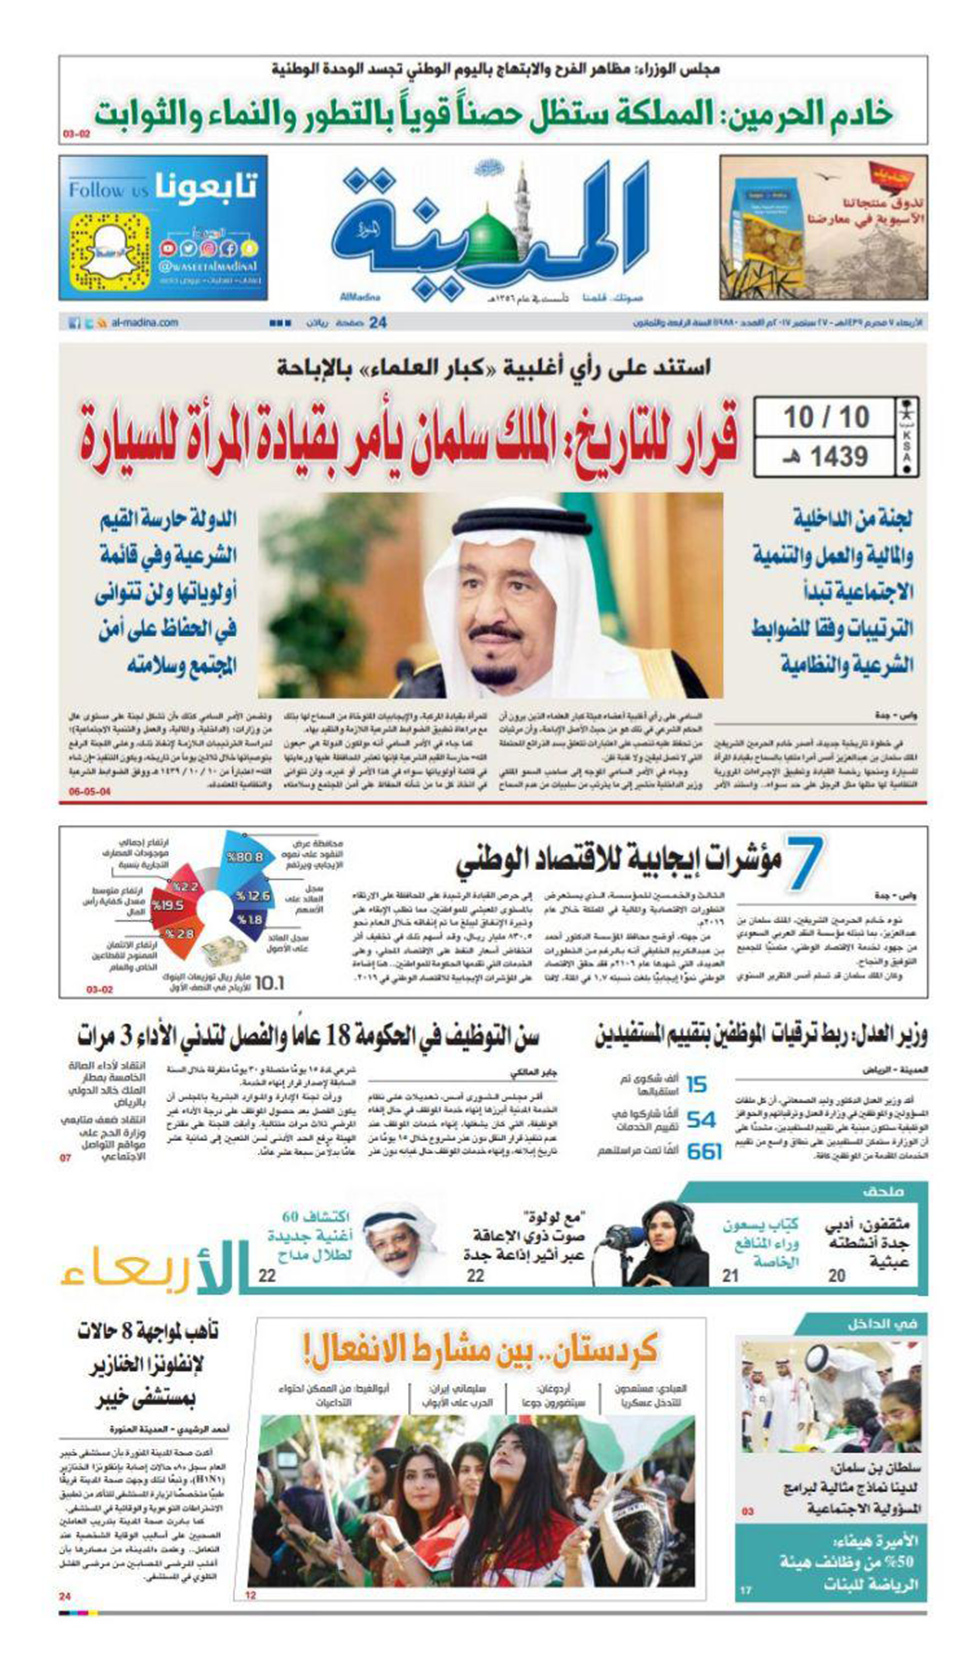 "החלטה היסטורית". שער העיתון "אל-מדינה" ()